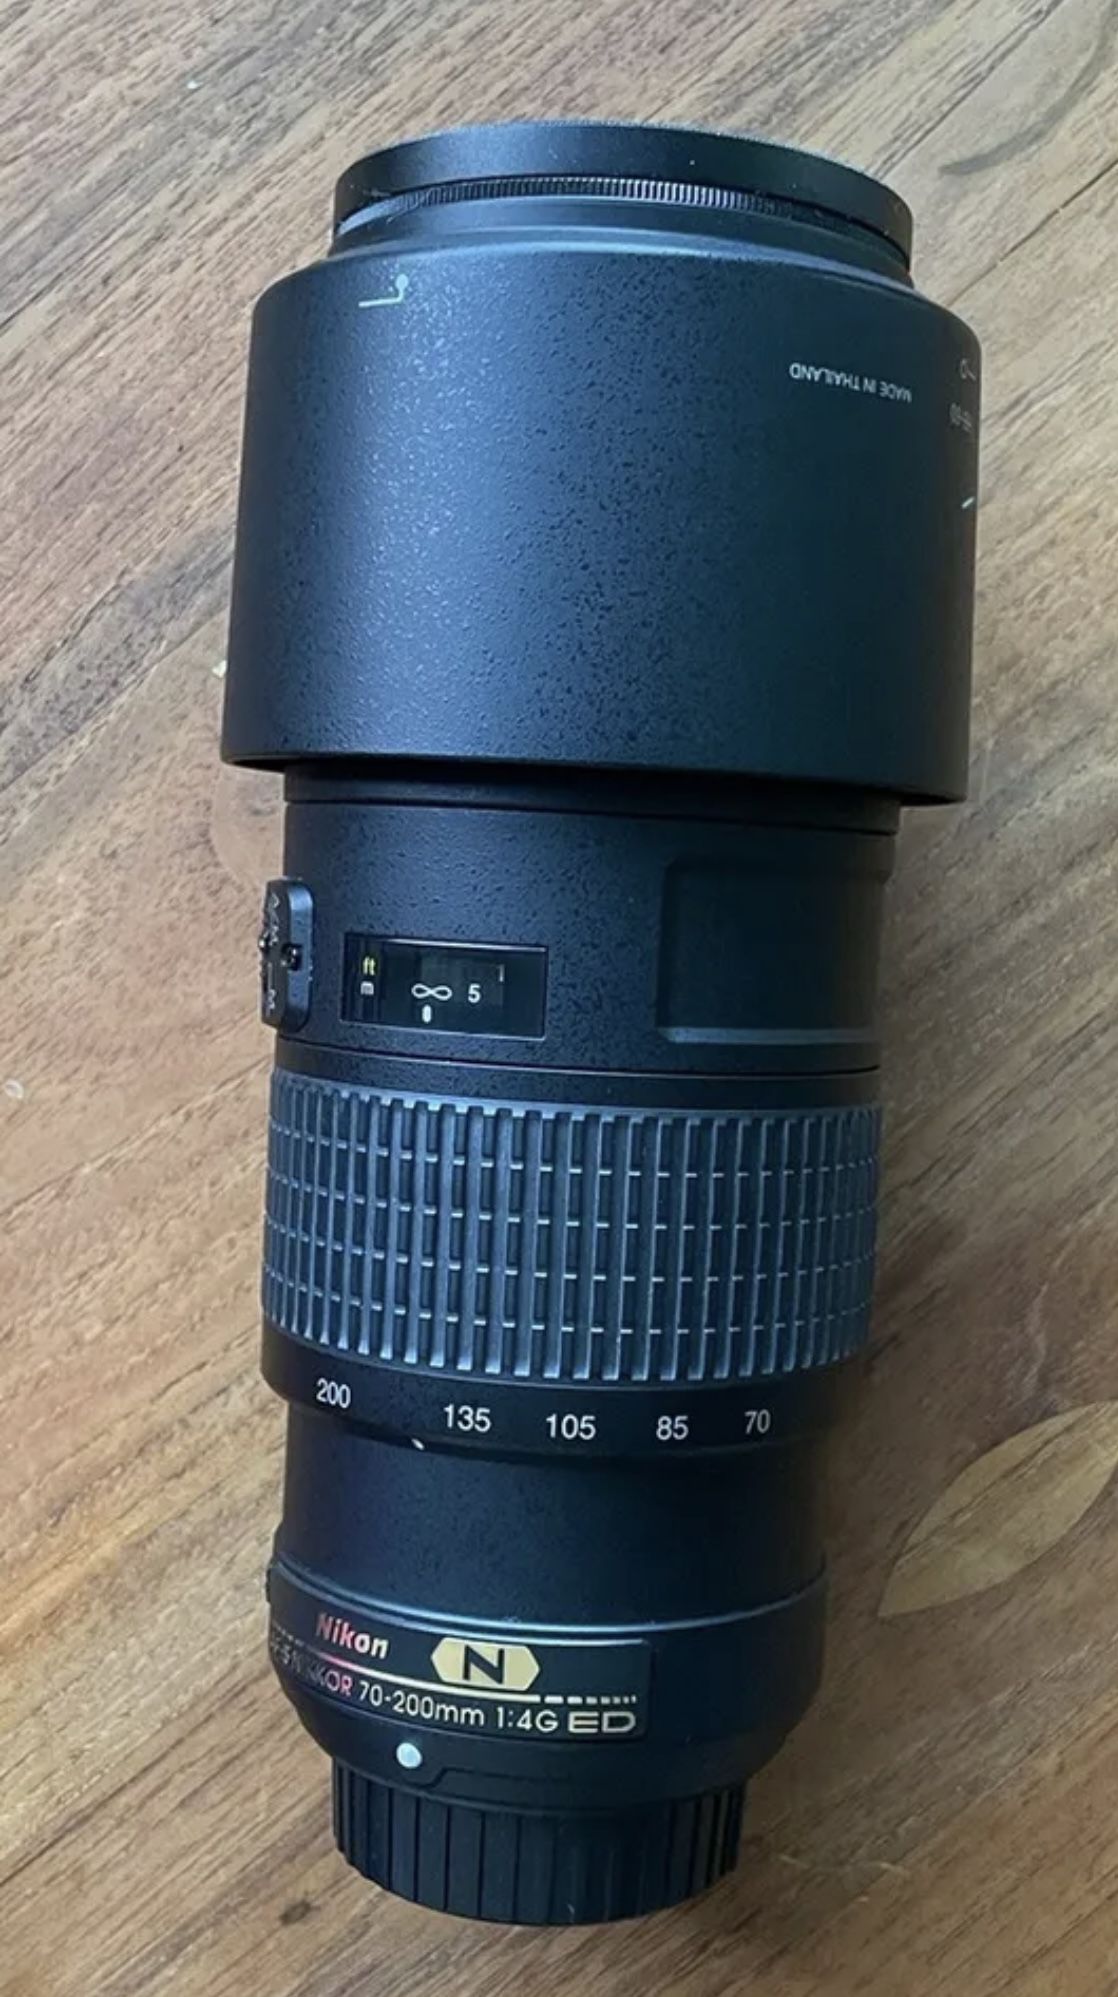 Nikon 70-200mm F4 G. ED Zoom Lens